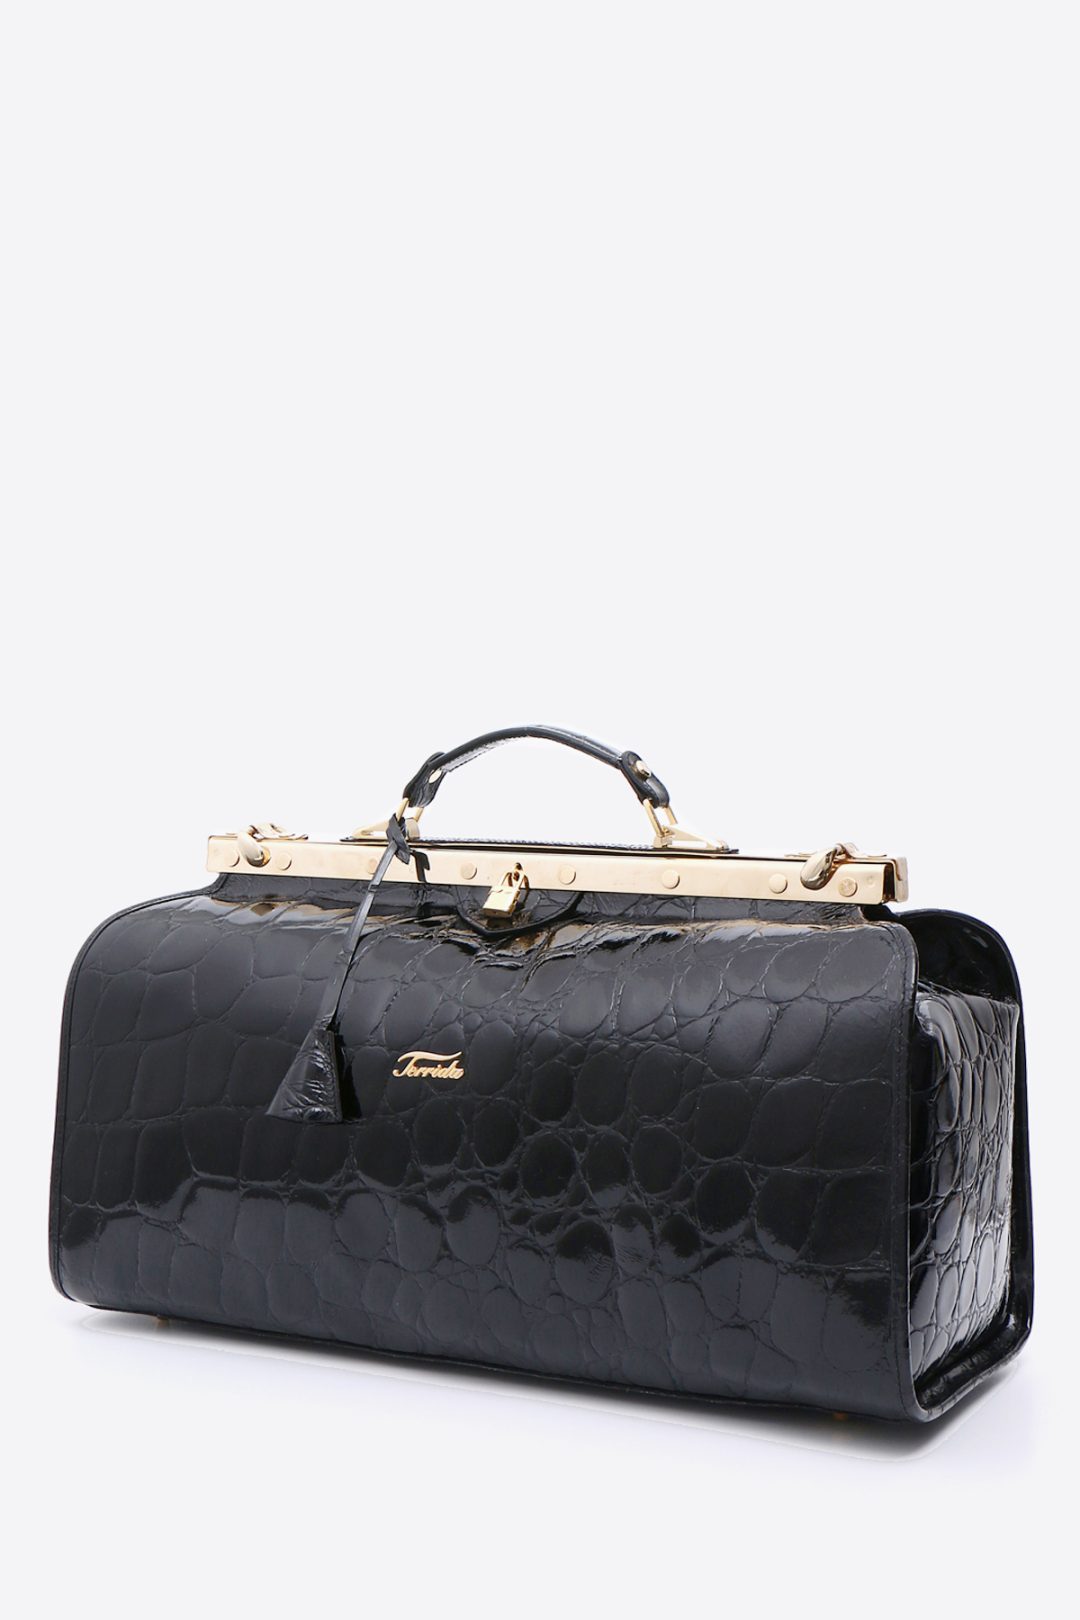 Louis Vuitton Women's Doctor Bags - Bags